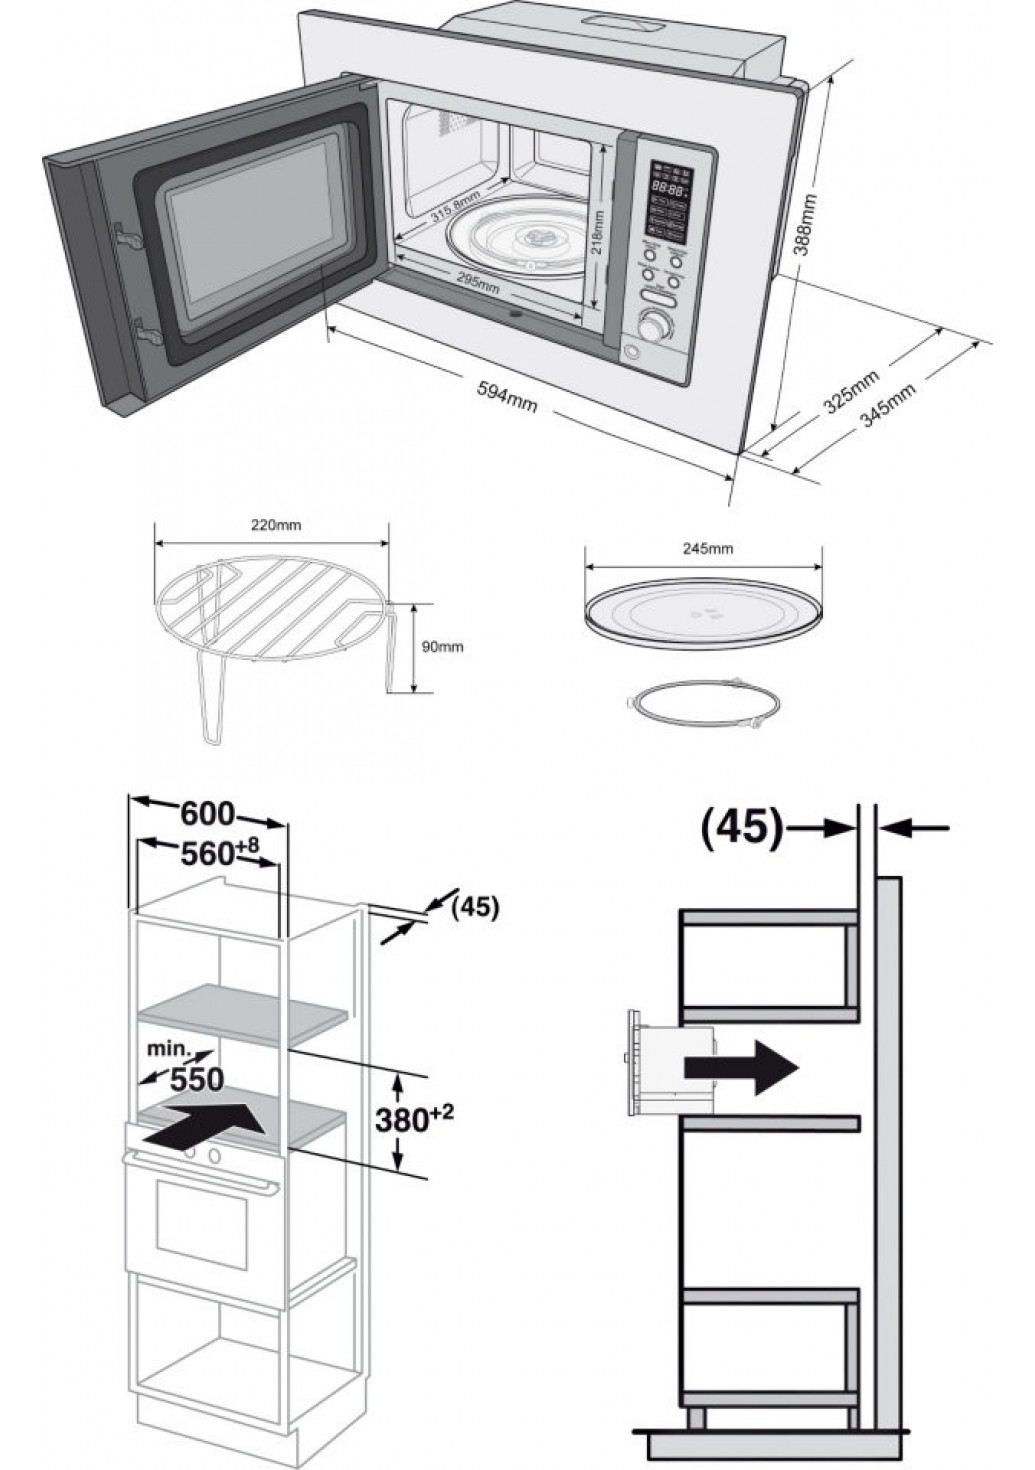 размер встроенной микроволновки в верхний шкаф